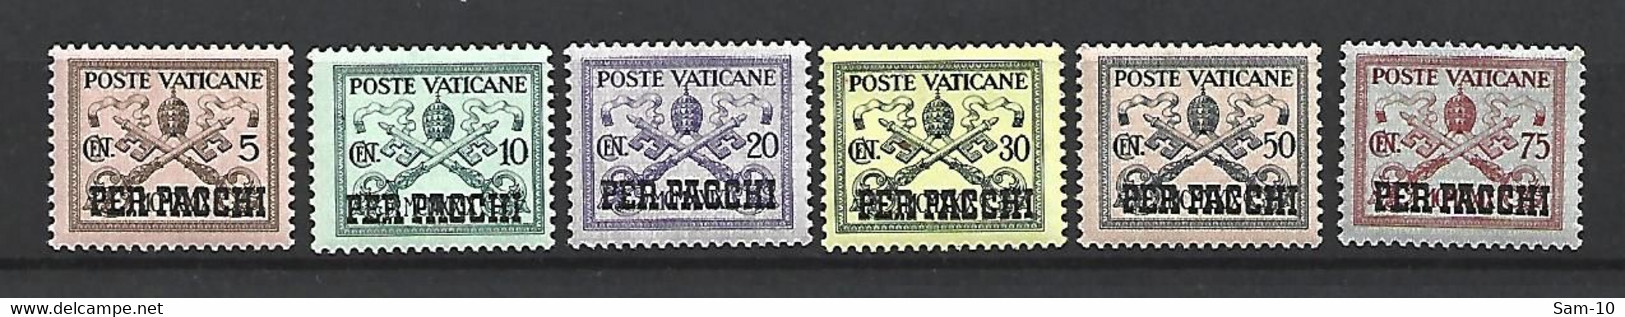 Timbre Du Vatican Colis Postaux Neuf **  N 1 / 2 / 3 / 5 / 6 / 7 - Colis Postaux